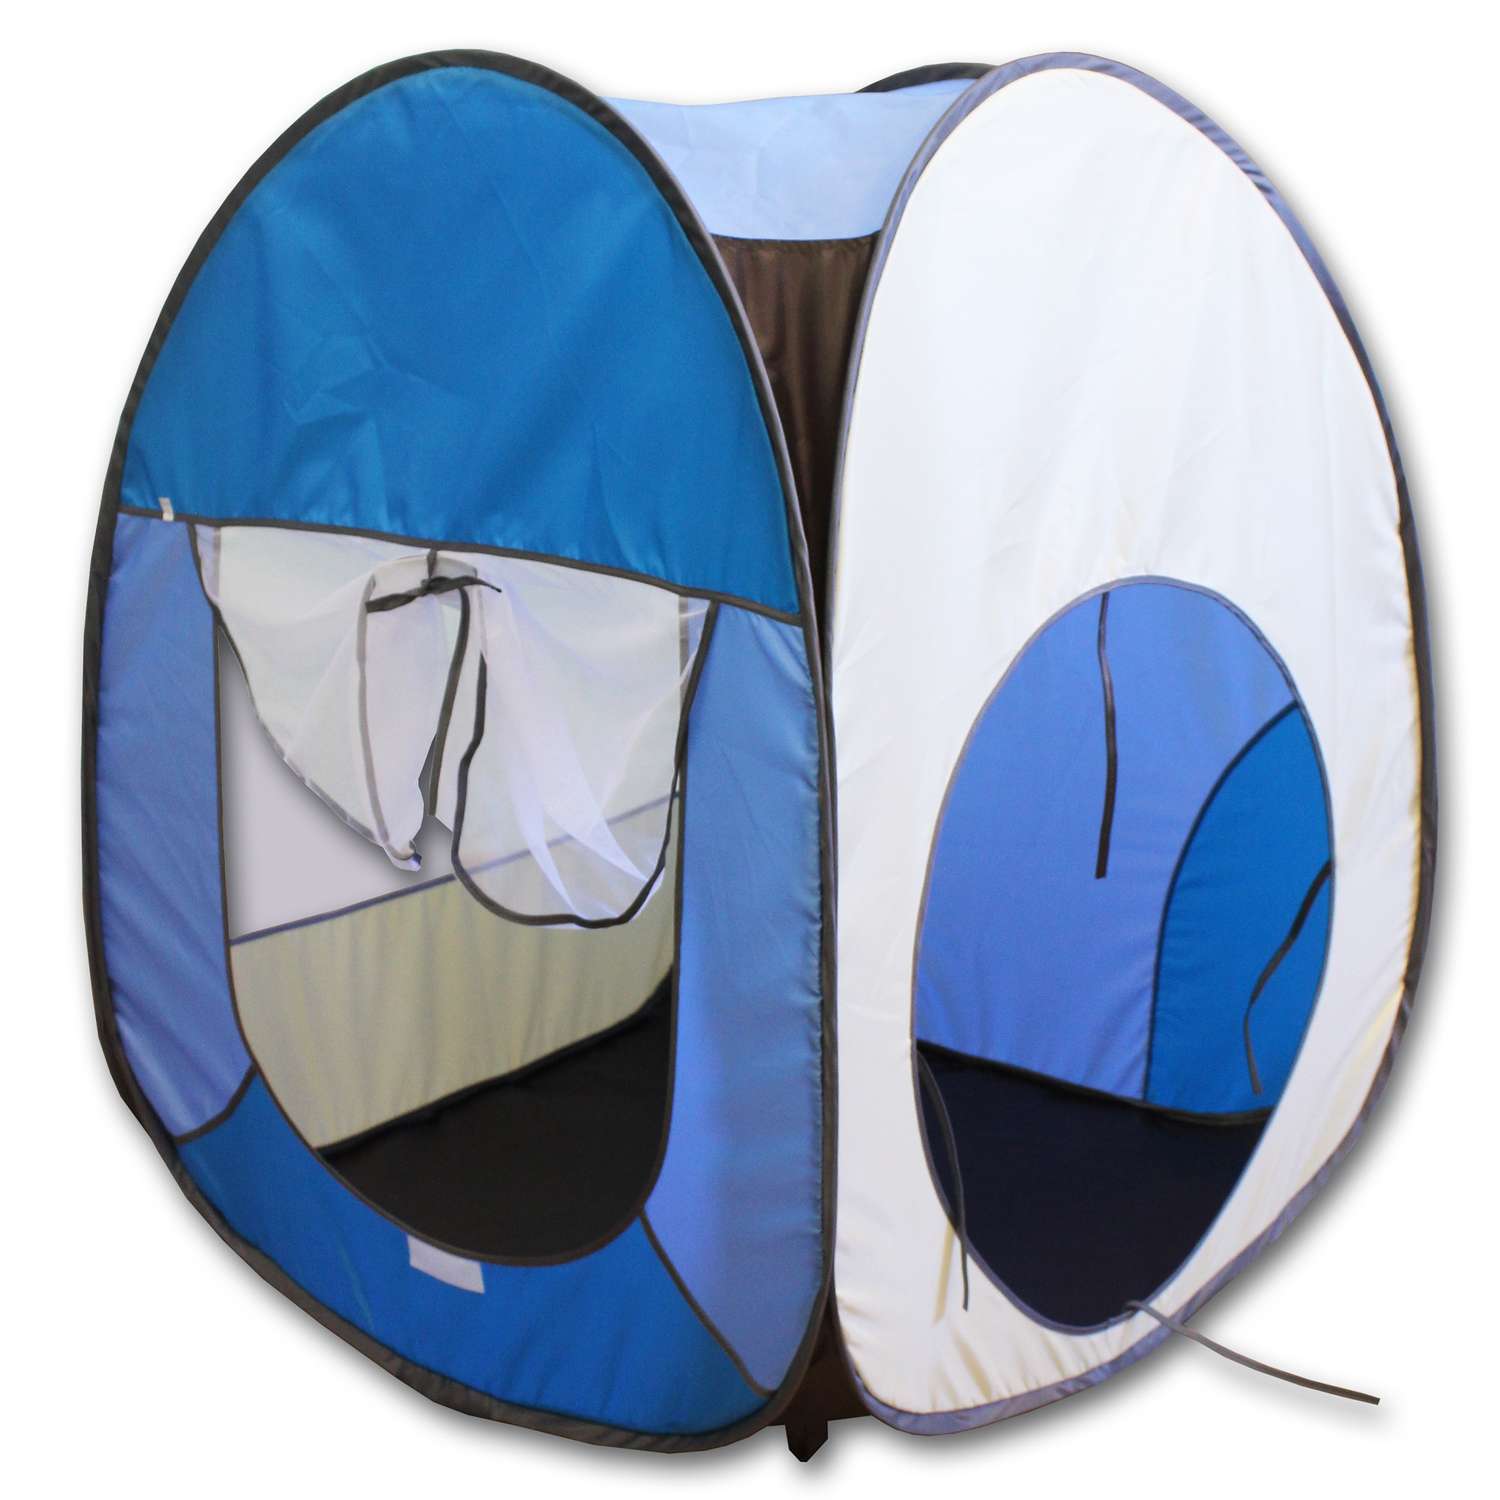 Палатка игровая Belon familia Волшебный домик цвет коричневый/яркий голубой/голубой/бежевый Размеры 75х75х90 см - фото 1